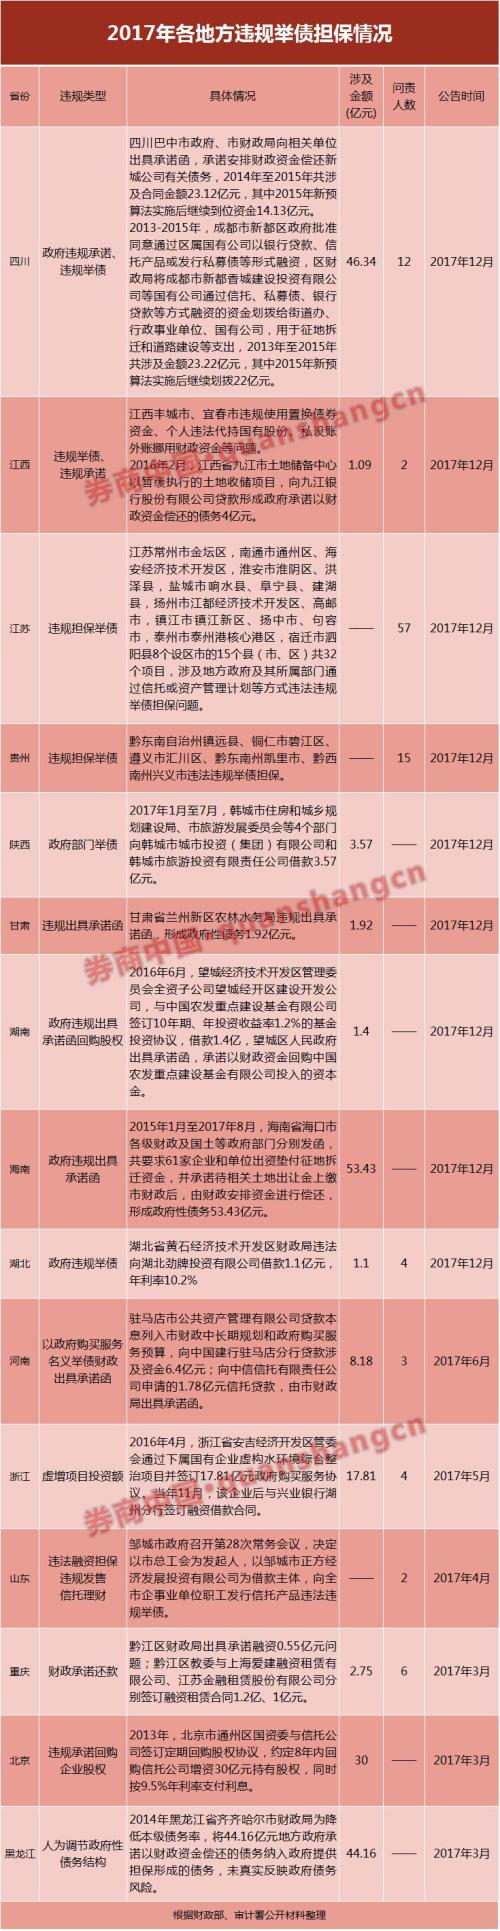 江苏省57人遭罚，海南涉债金额53亿